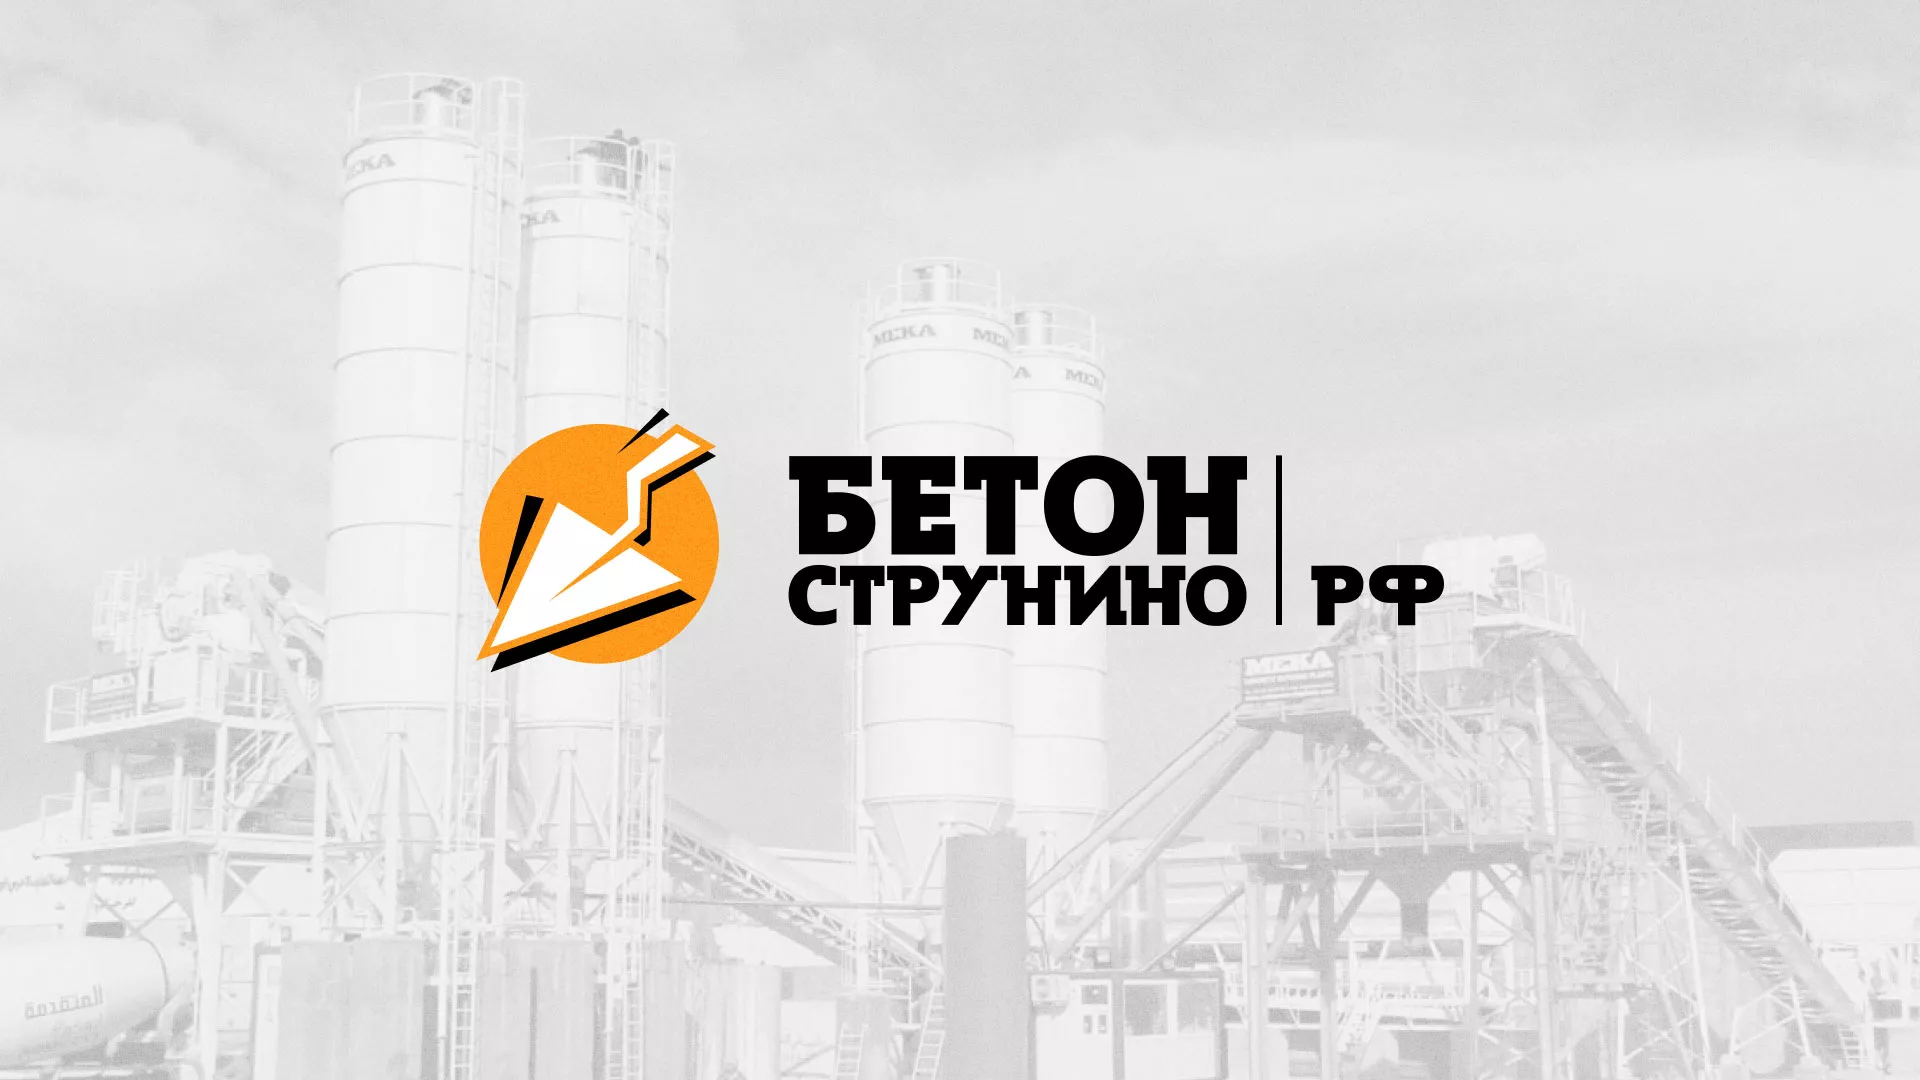 Разработка логотипа для бетонного завода в Соколе